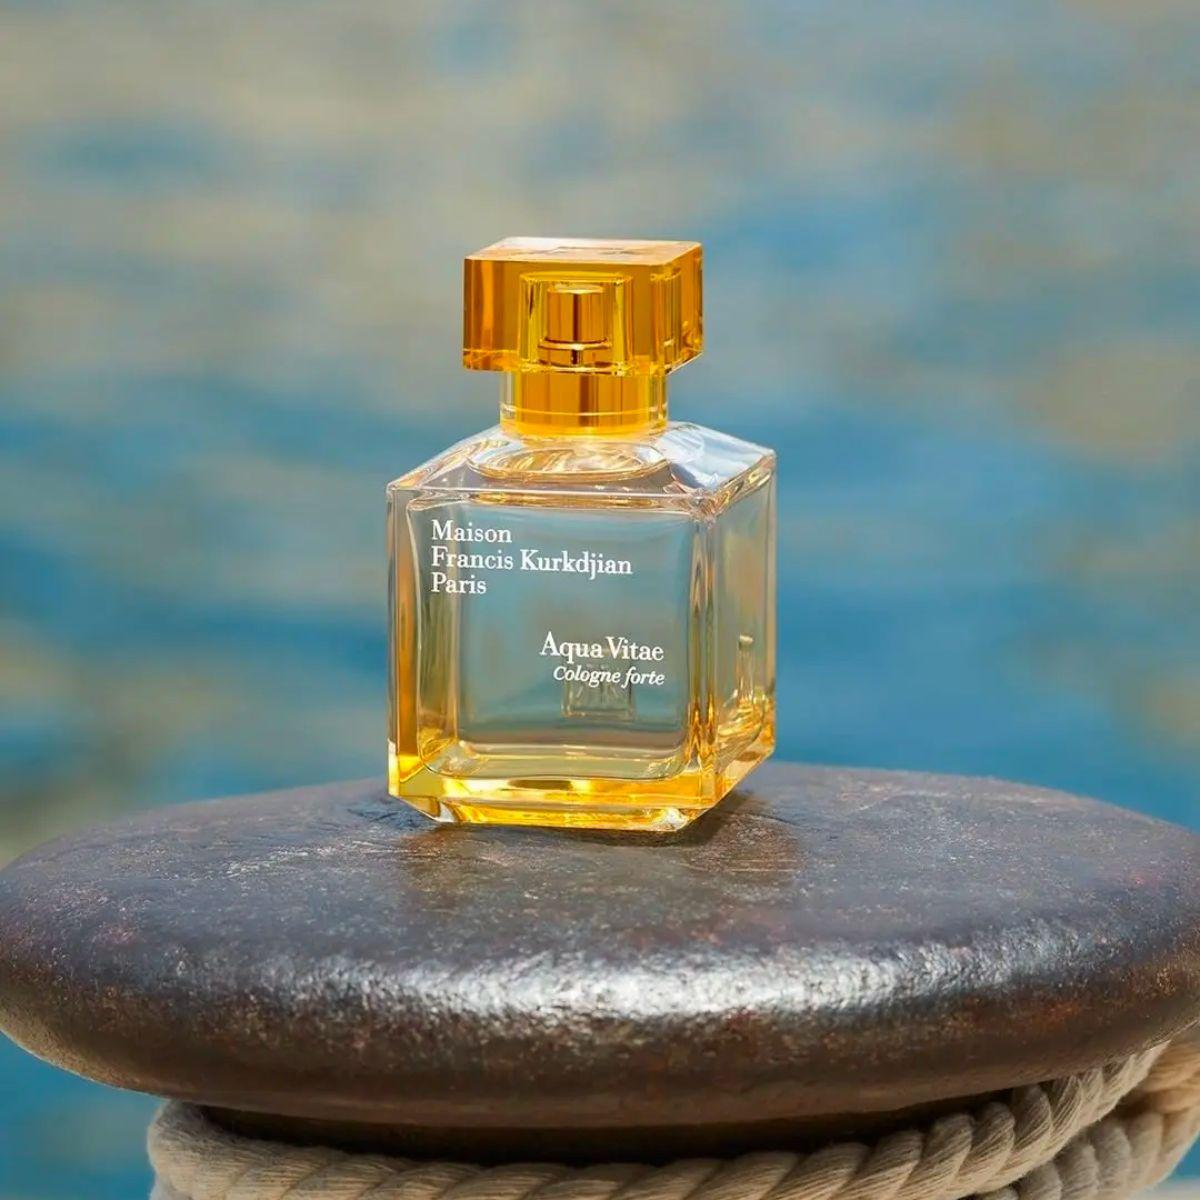 Aqua Vitae Cologne forte - eau de parfum by Maison Francis